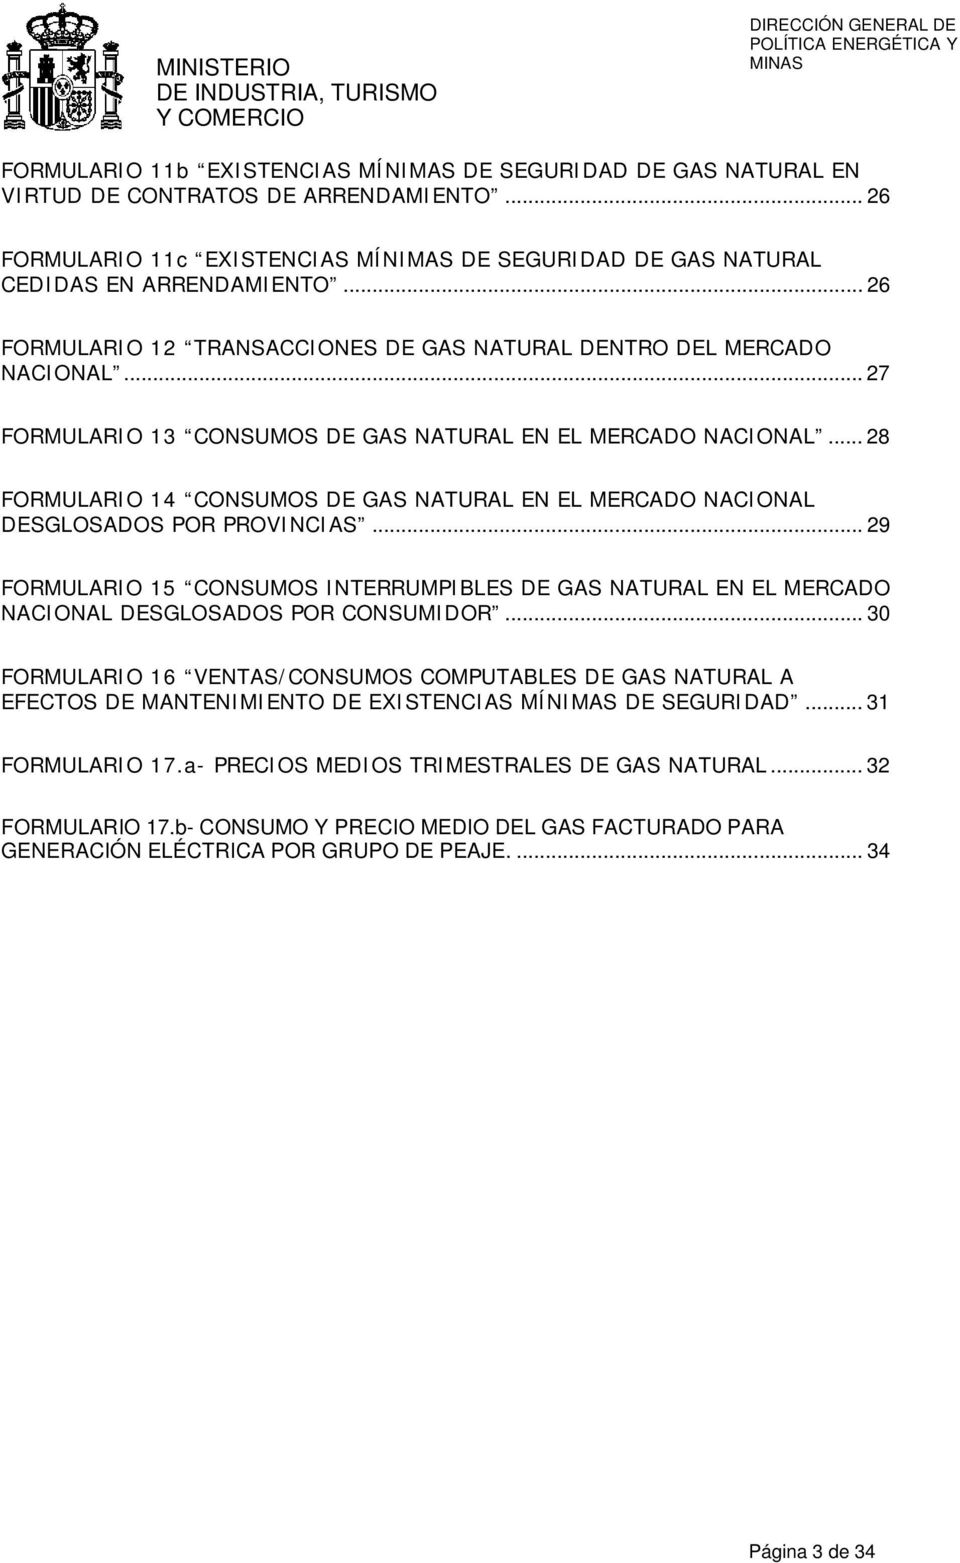 .. 28 FORMULARIO 14 CONSUMOS DE GAS NATURAL EN EL MERCADO NACIONAL DESGLOSADOS POR PROVINCIAS.